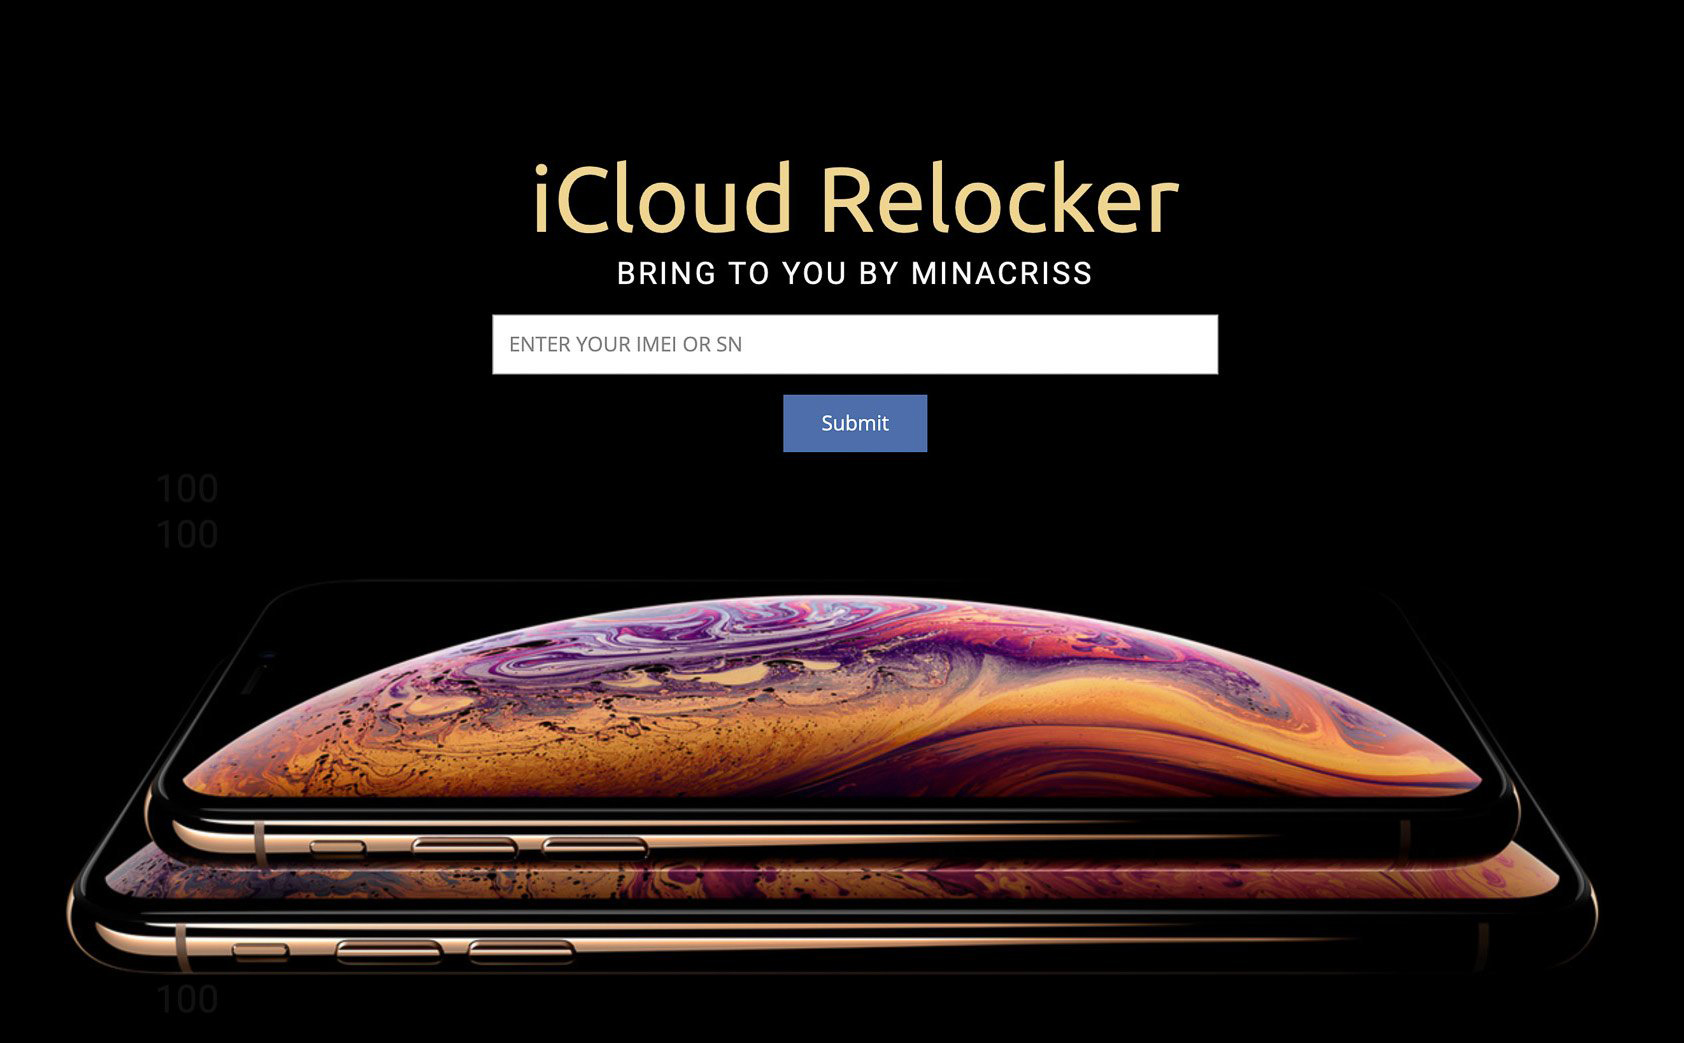 Apple đã chính thức hỗ trợ Unlock iClould cho máy bị “RELOCK từ xa”